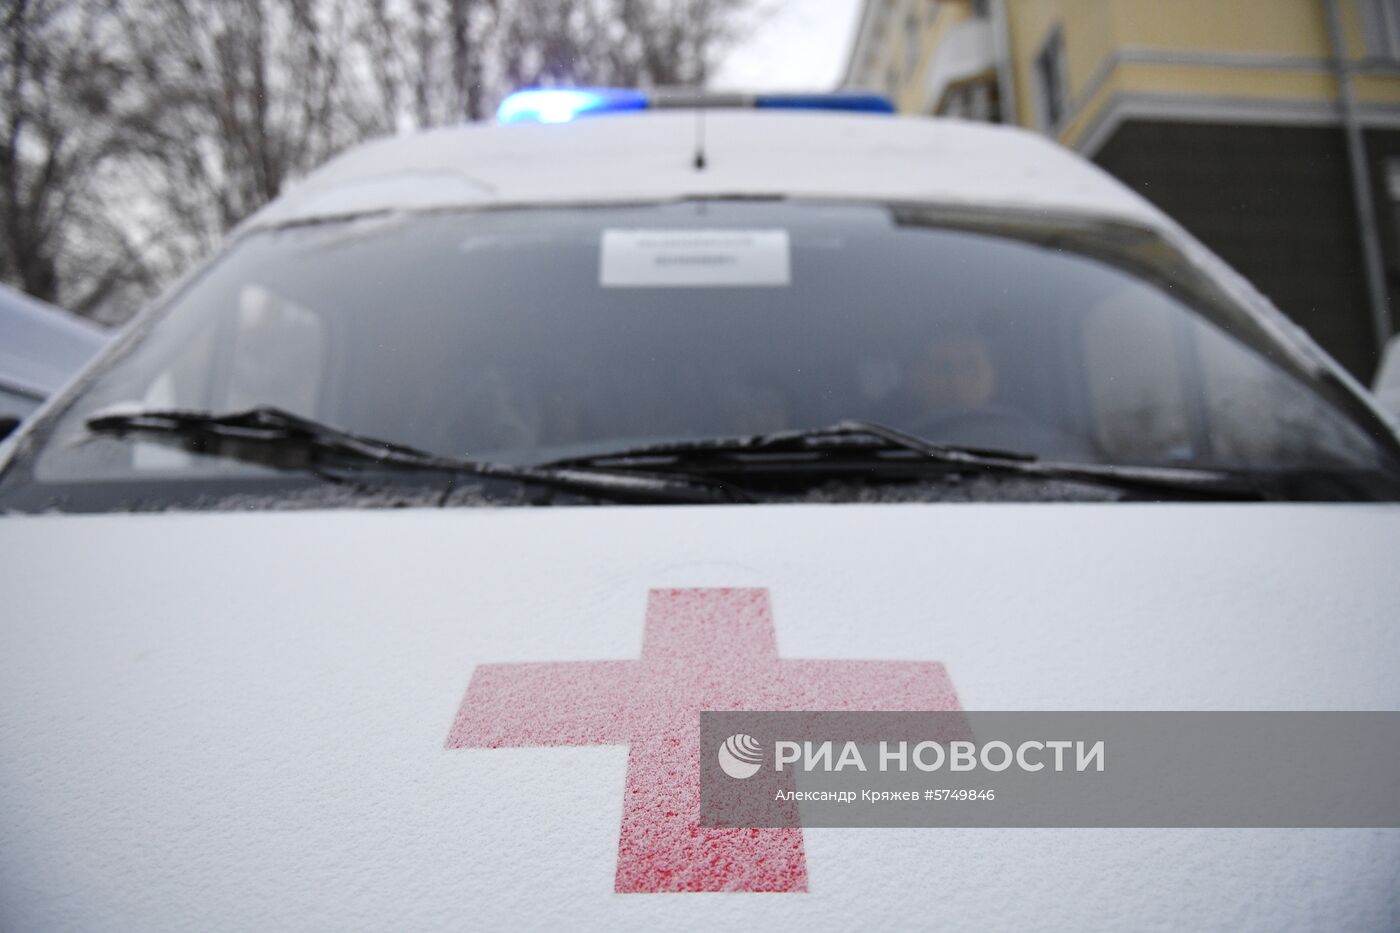 Передача автомобилей скорой помощи медучреждениям Новосибирска